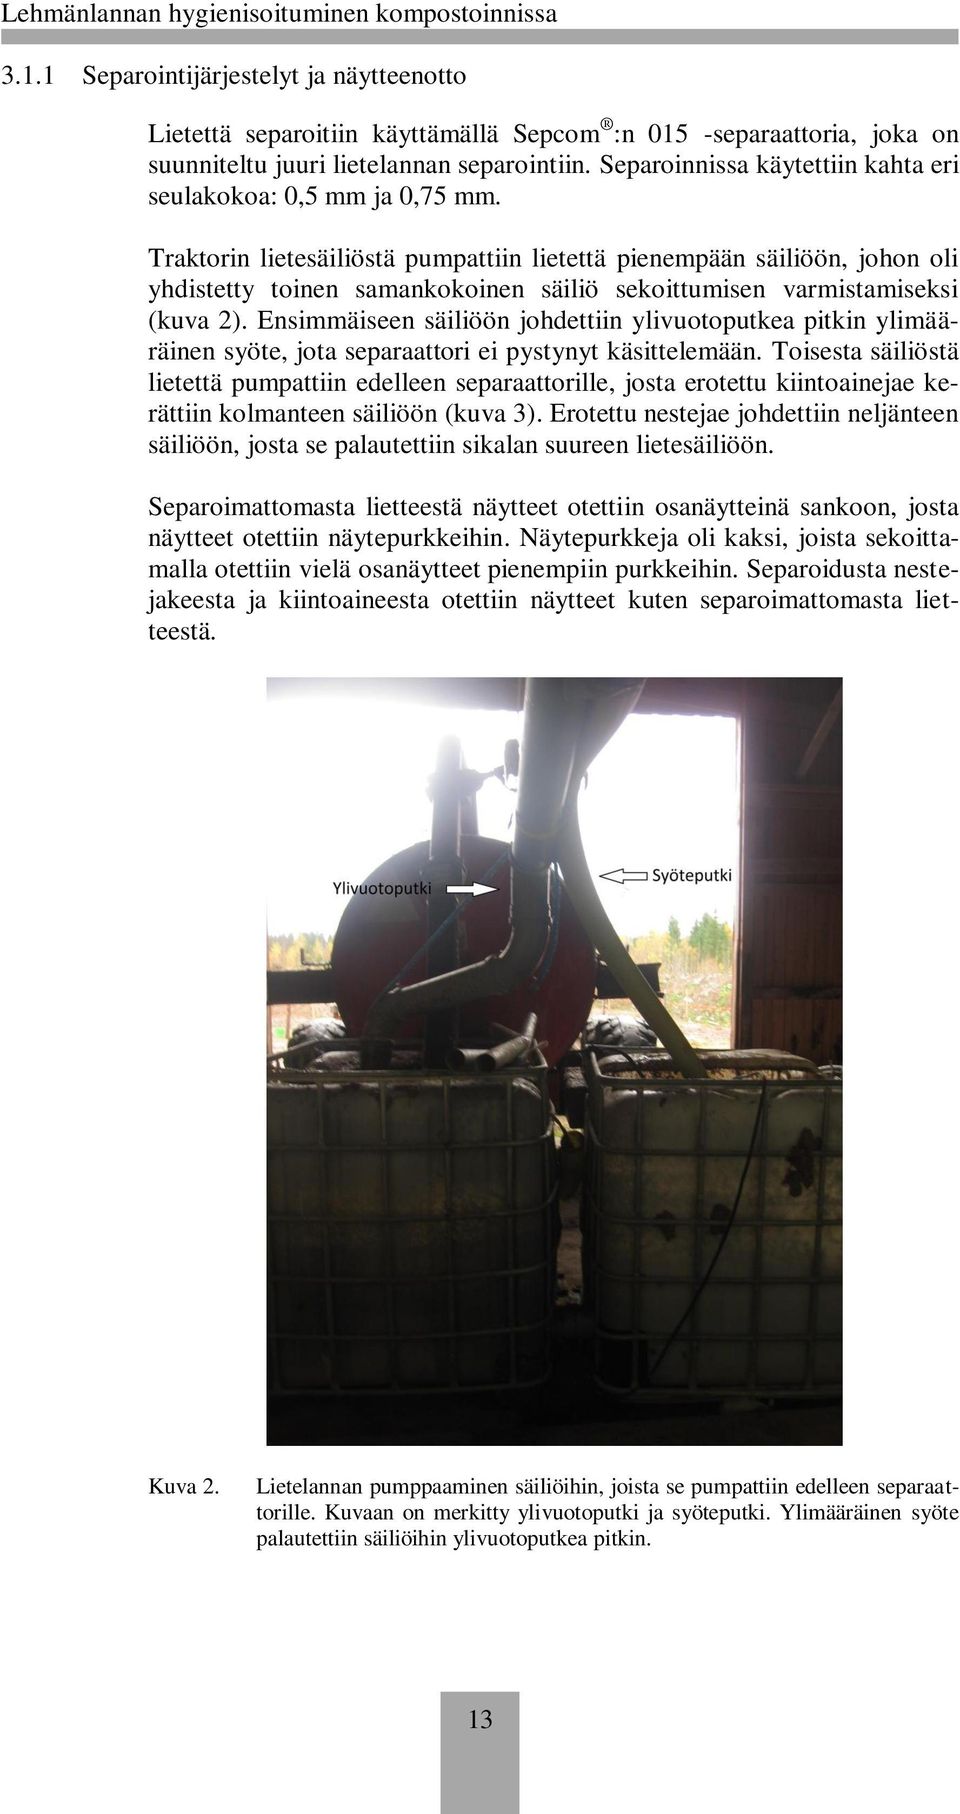 Traktorin lietesäiliöstä pumpattiin lietettä pienempään säiliöön, johon oli yhdistetty toinen samankokoinen säiliö sekoittumisen varmistamiseksi (kuva 2).